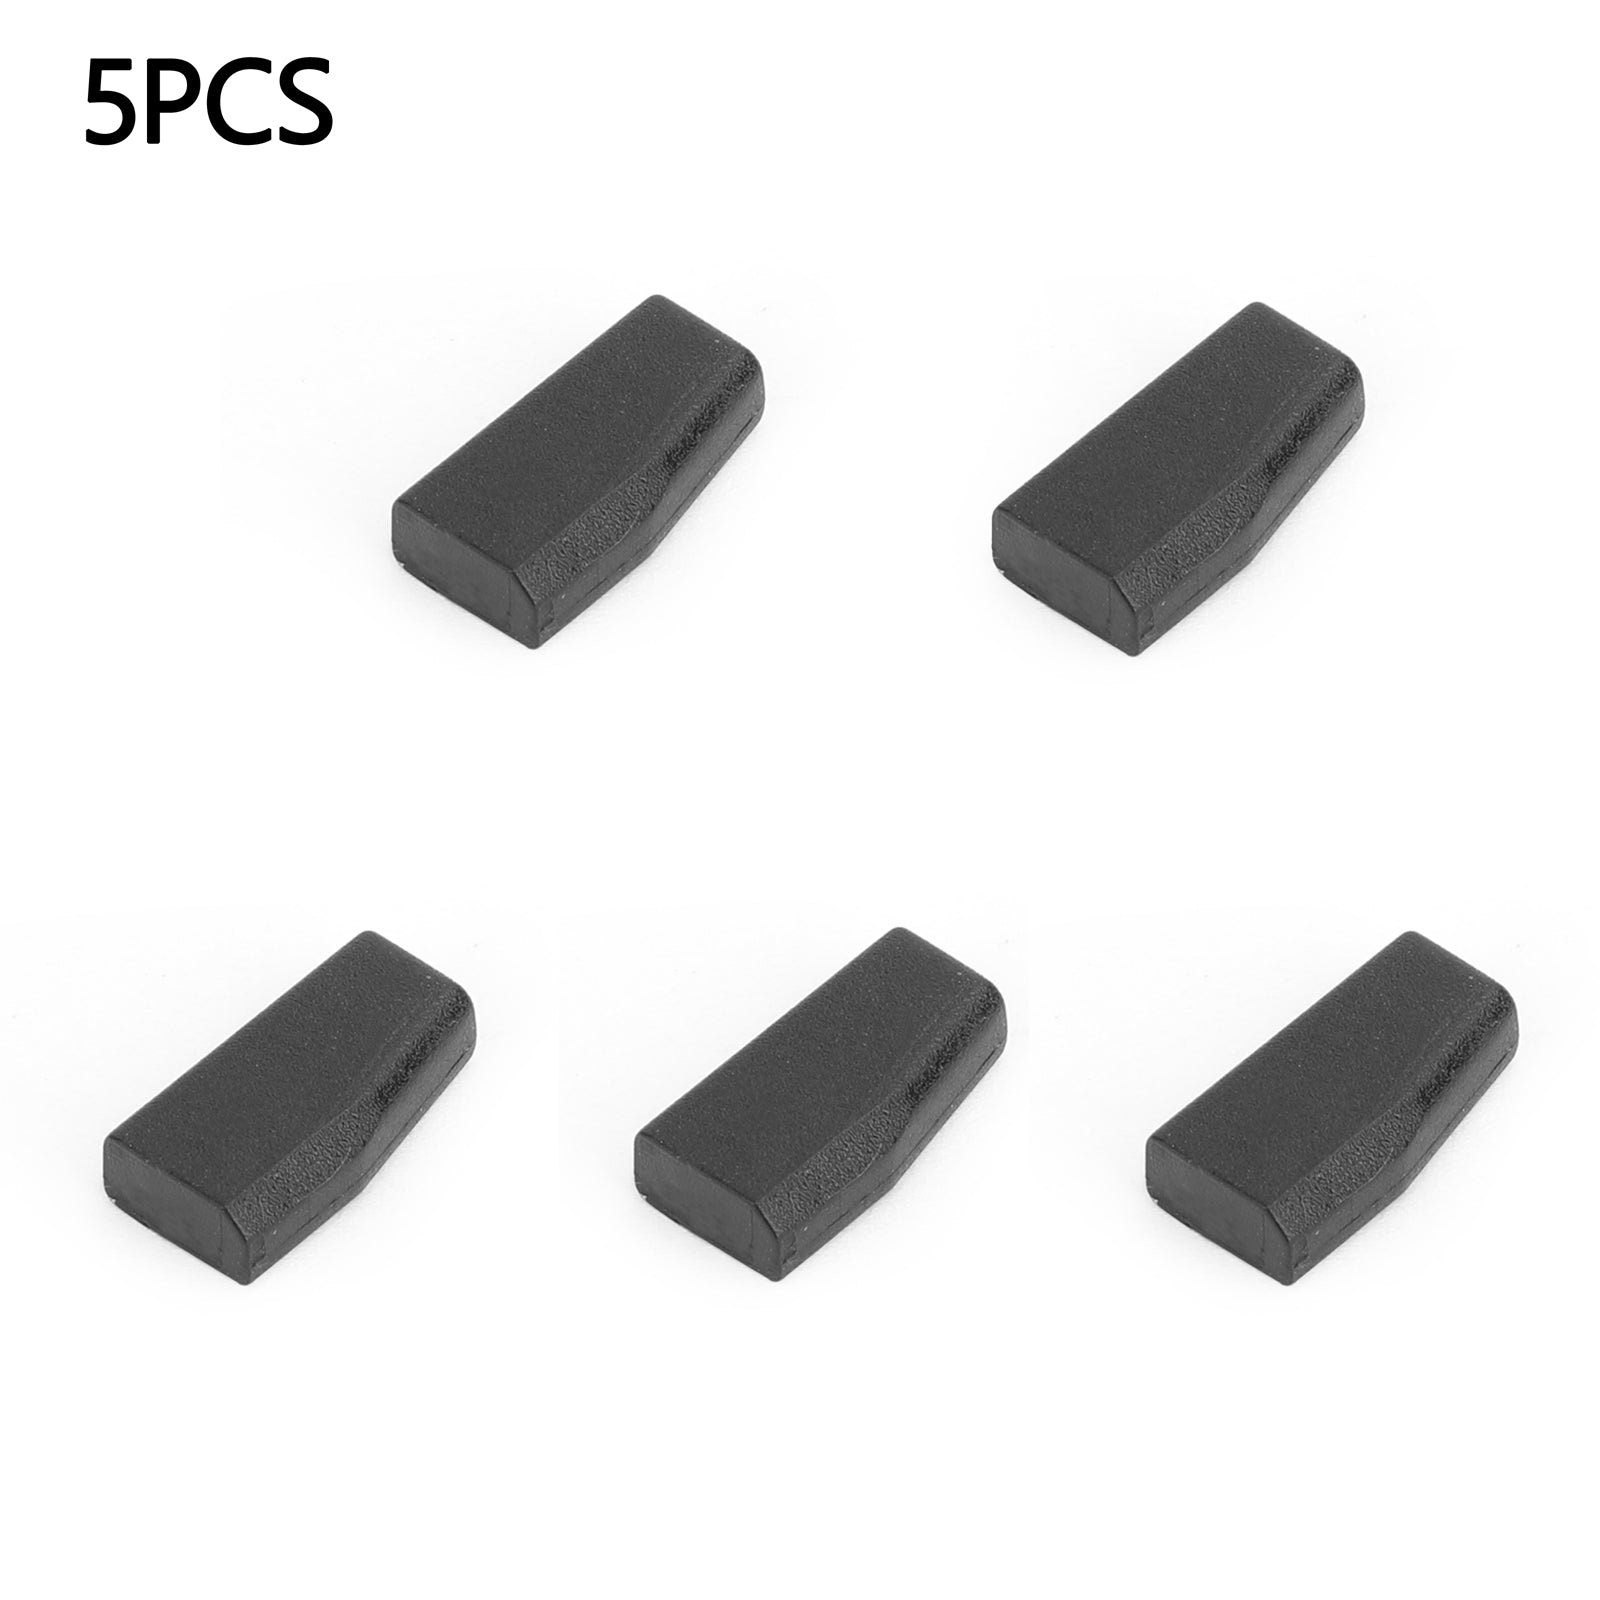 5 uds PCF7936 Chip ID46 PCF7936AS transpondedor en blanco (reemplaza PCF7936) clave Compatible genérica